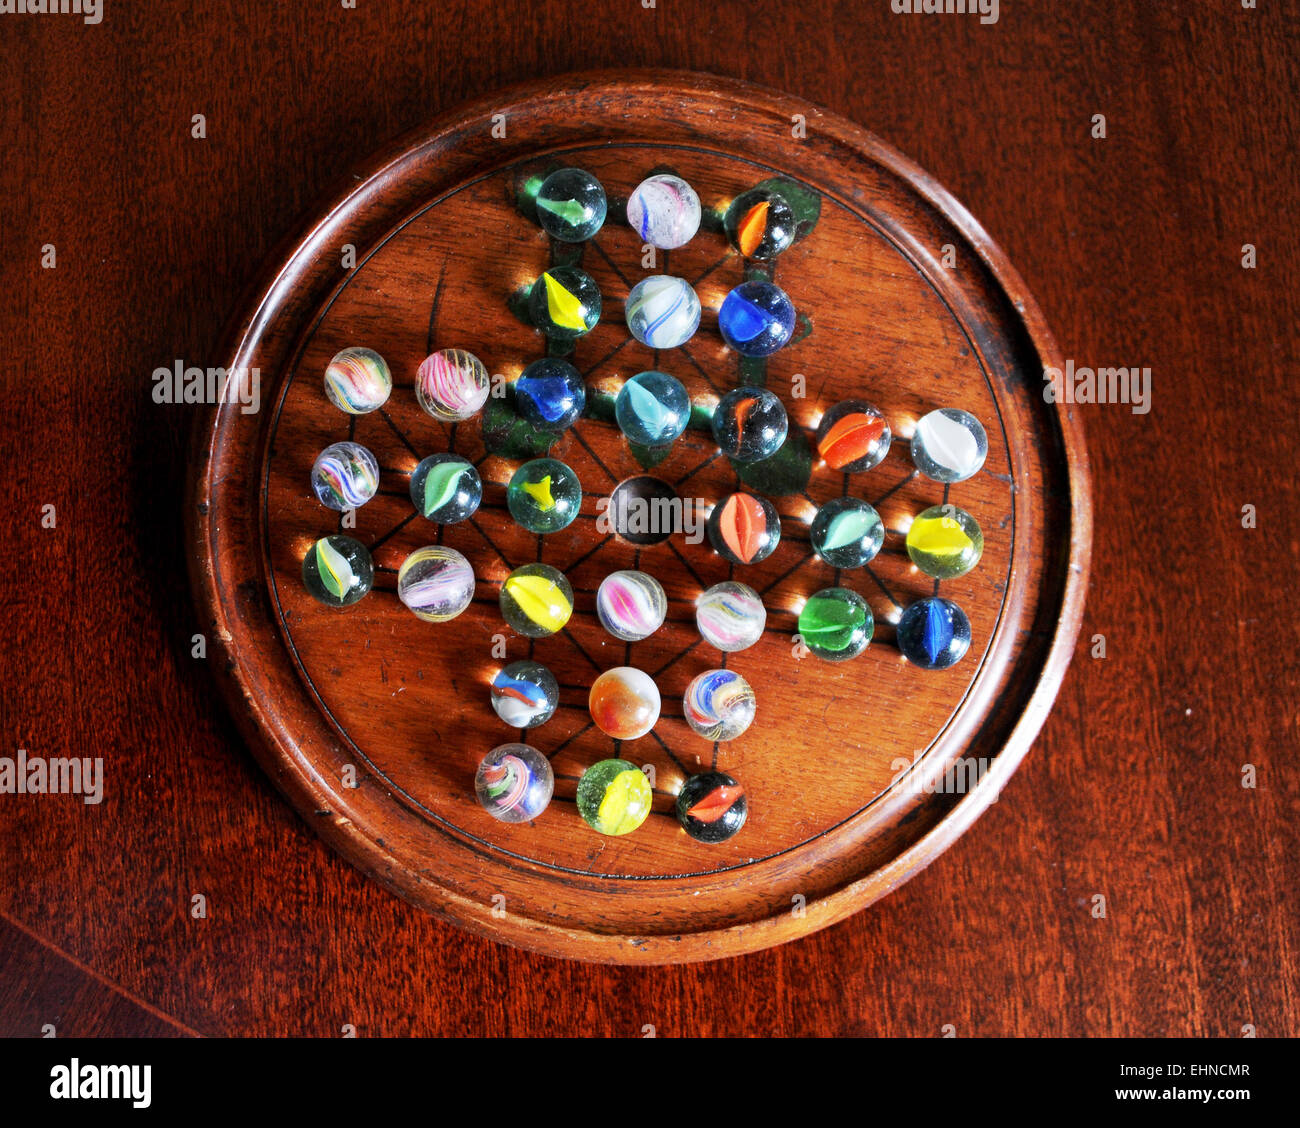 Altmodische traditionellen Solitaire-Spiel mit hölzernen Brett und Glas  Murmeln Stockfotografie - Alamy